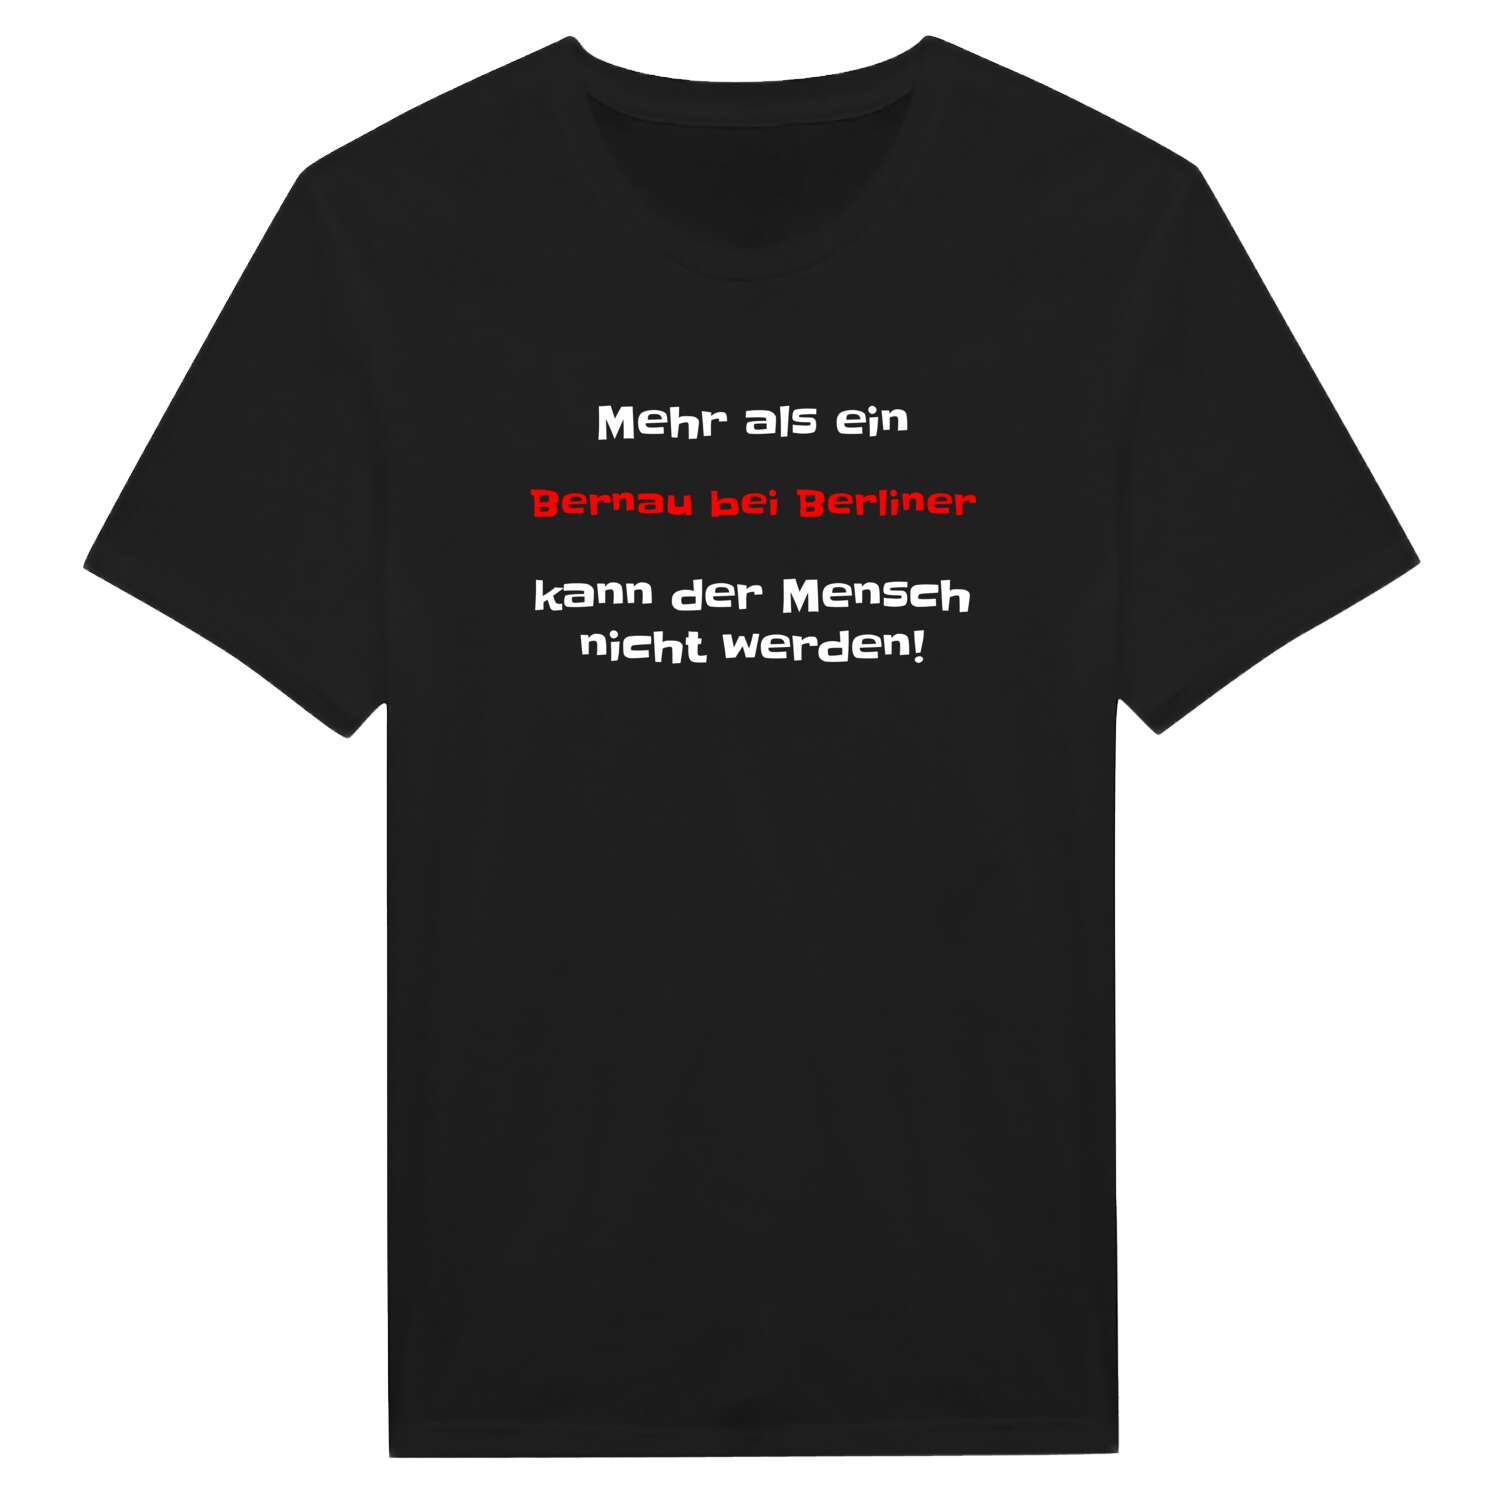 Bernau bei Berlin T-Shirt »Mehr als ein«